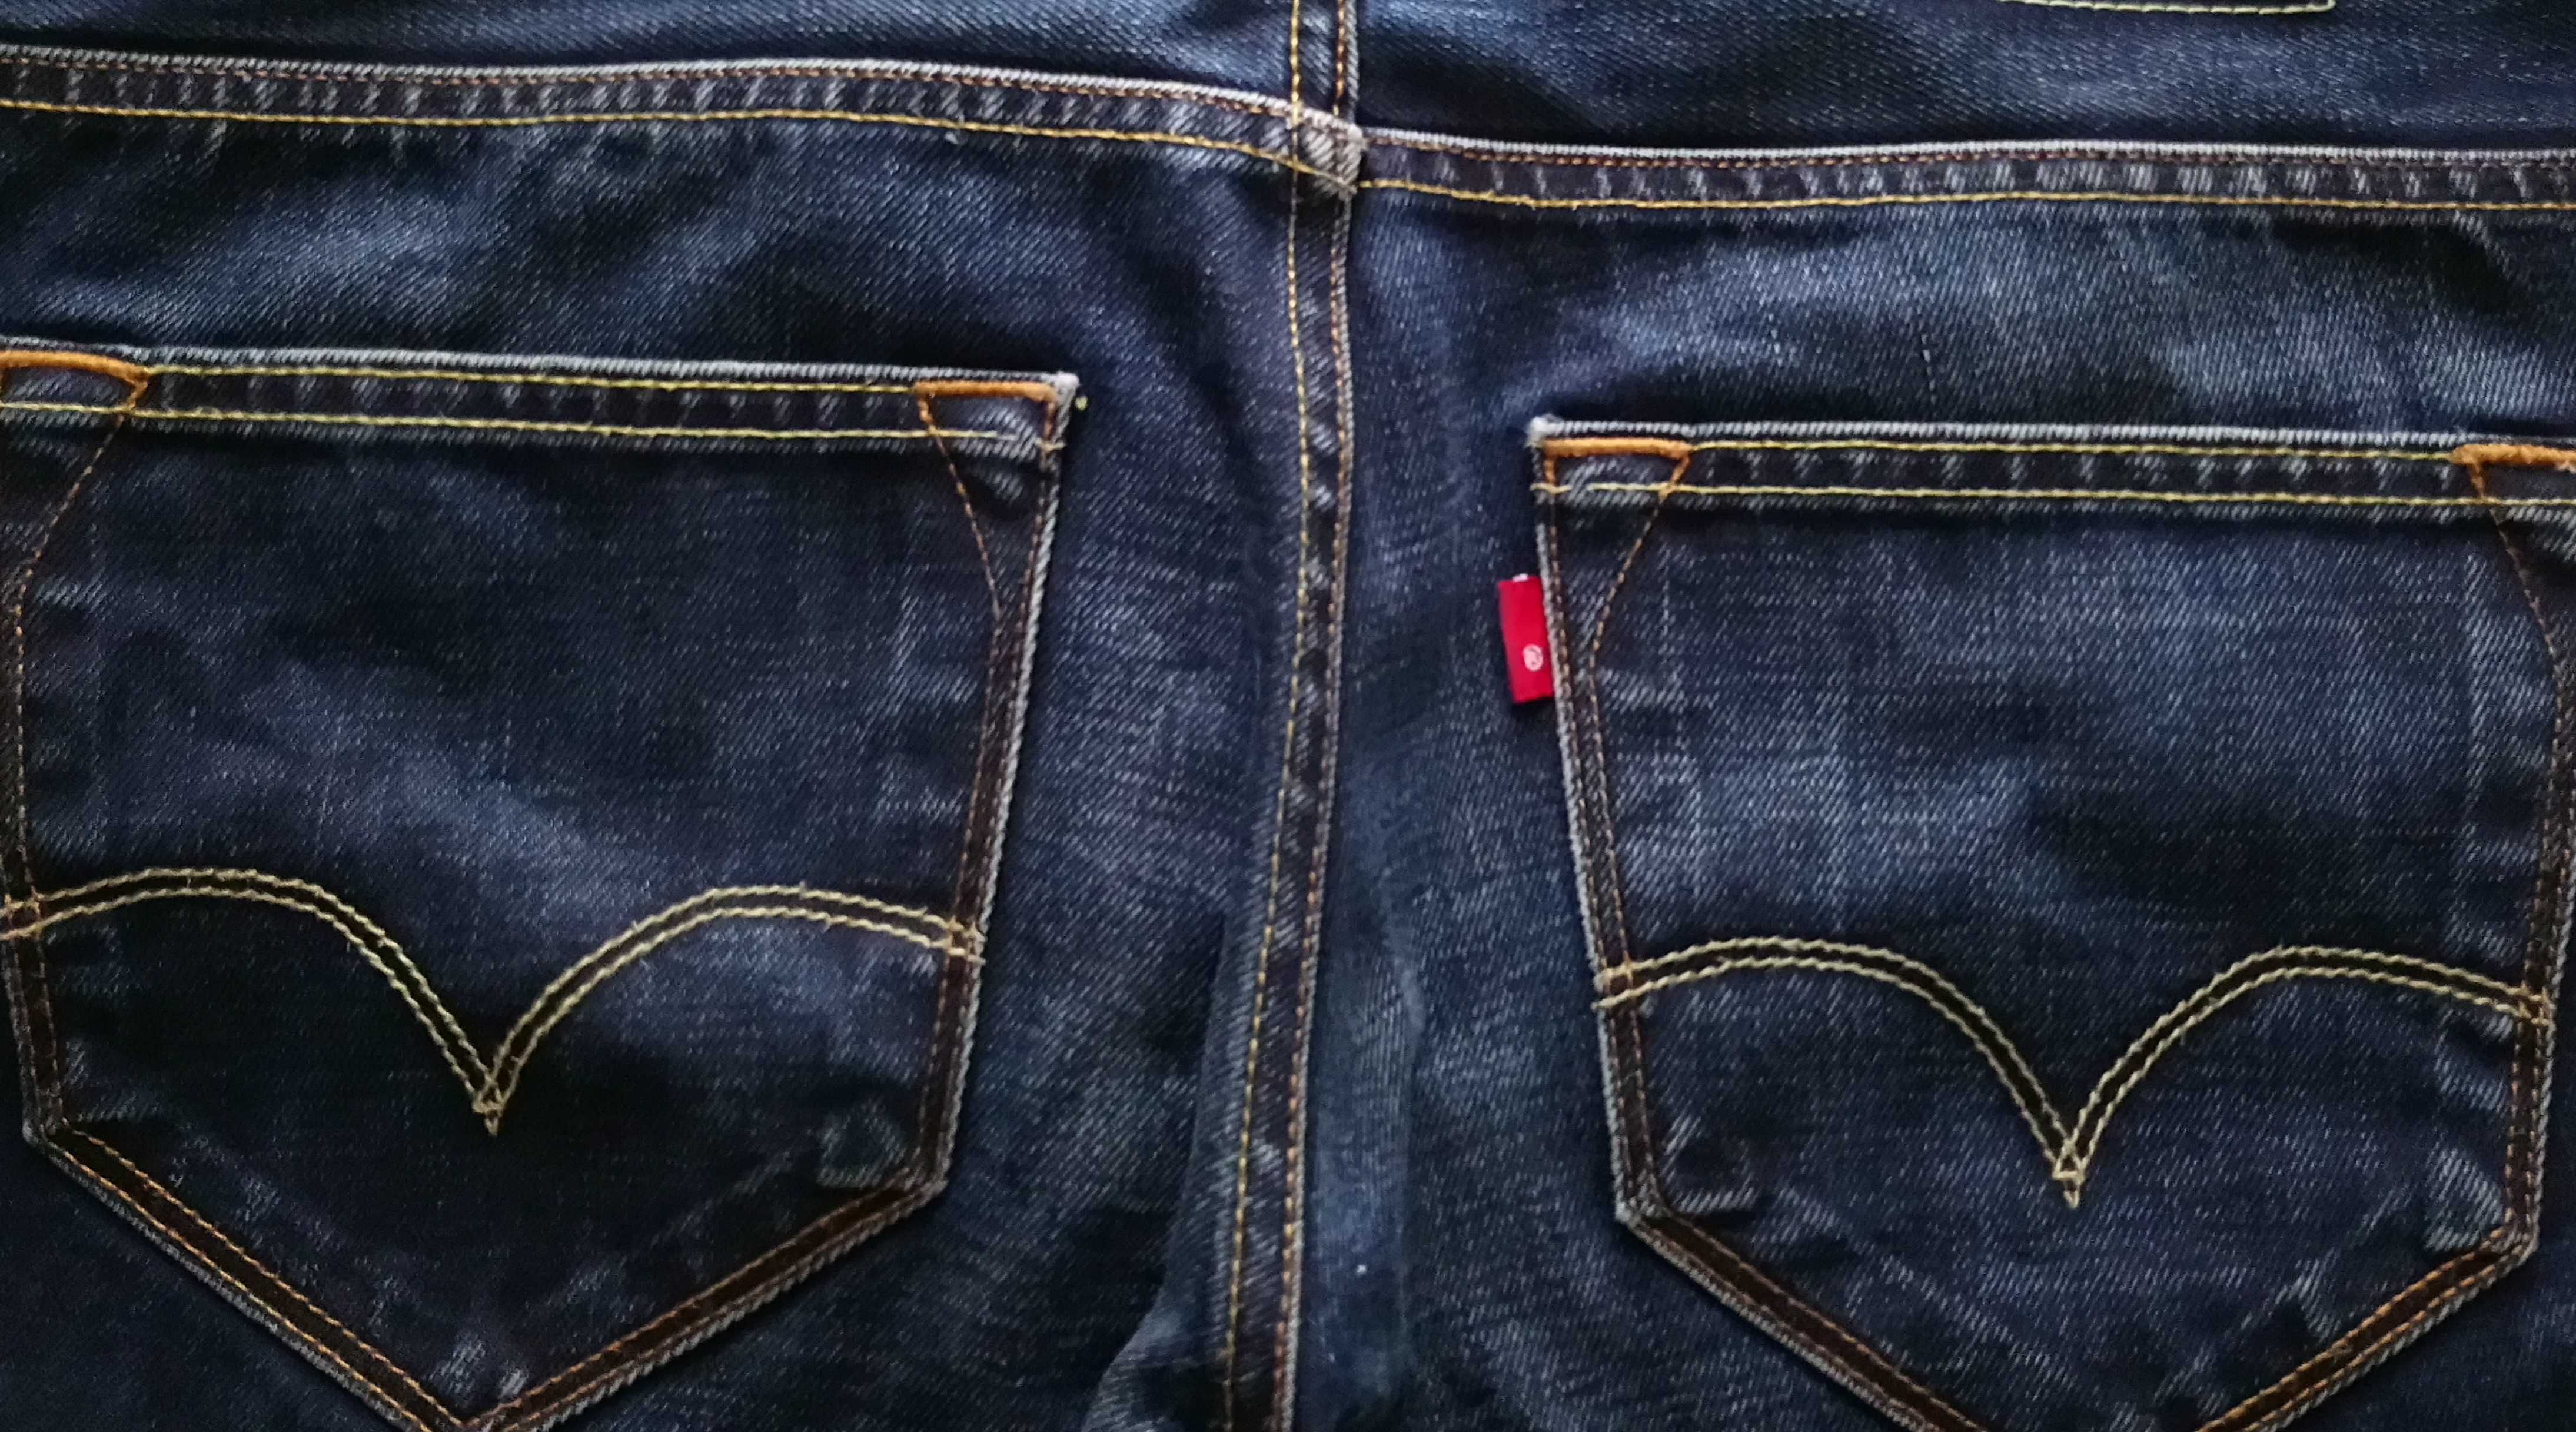 Męskie spodnie jeansowe LEVIS rozmiar L jeans W32 L32